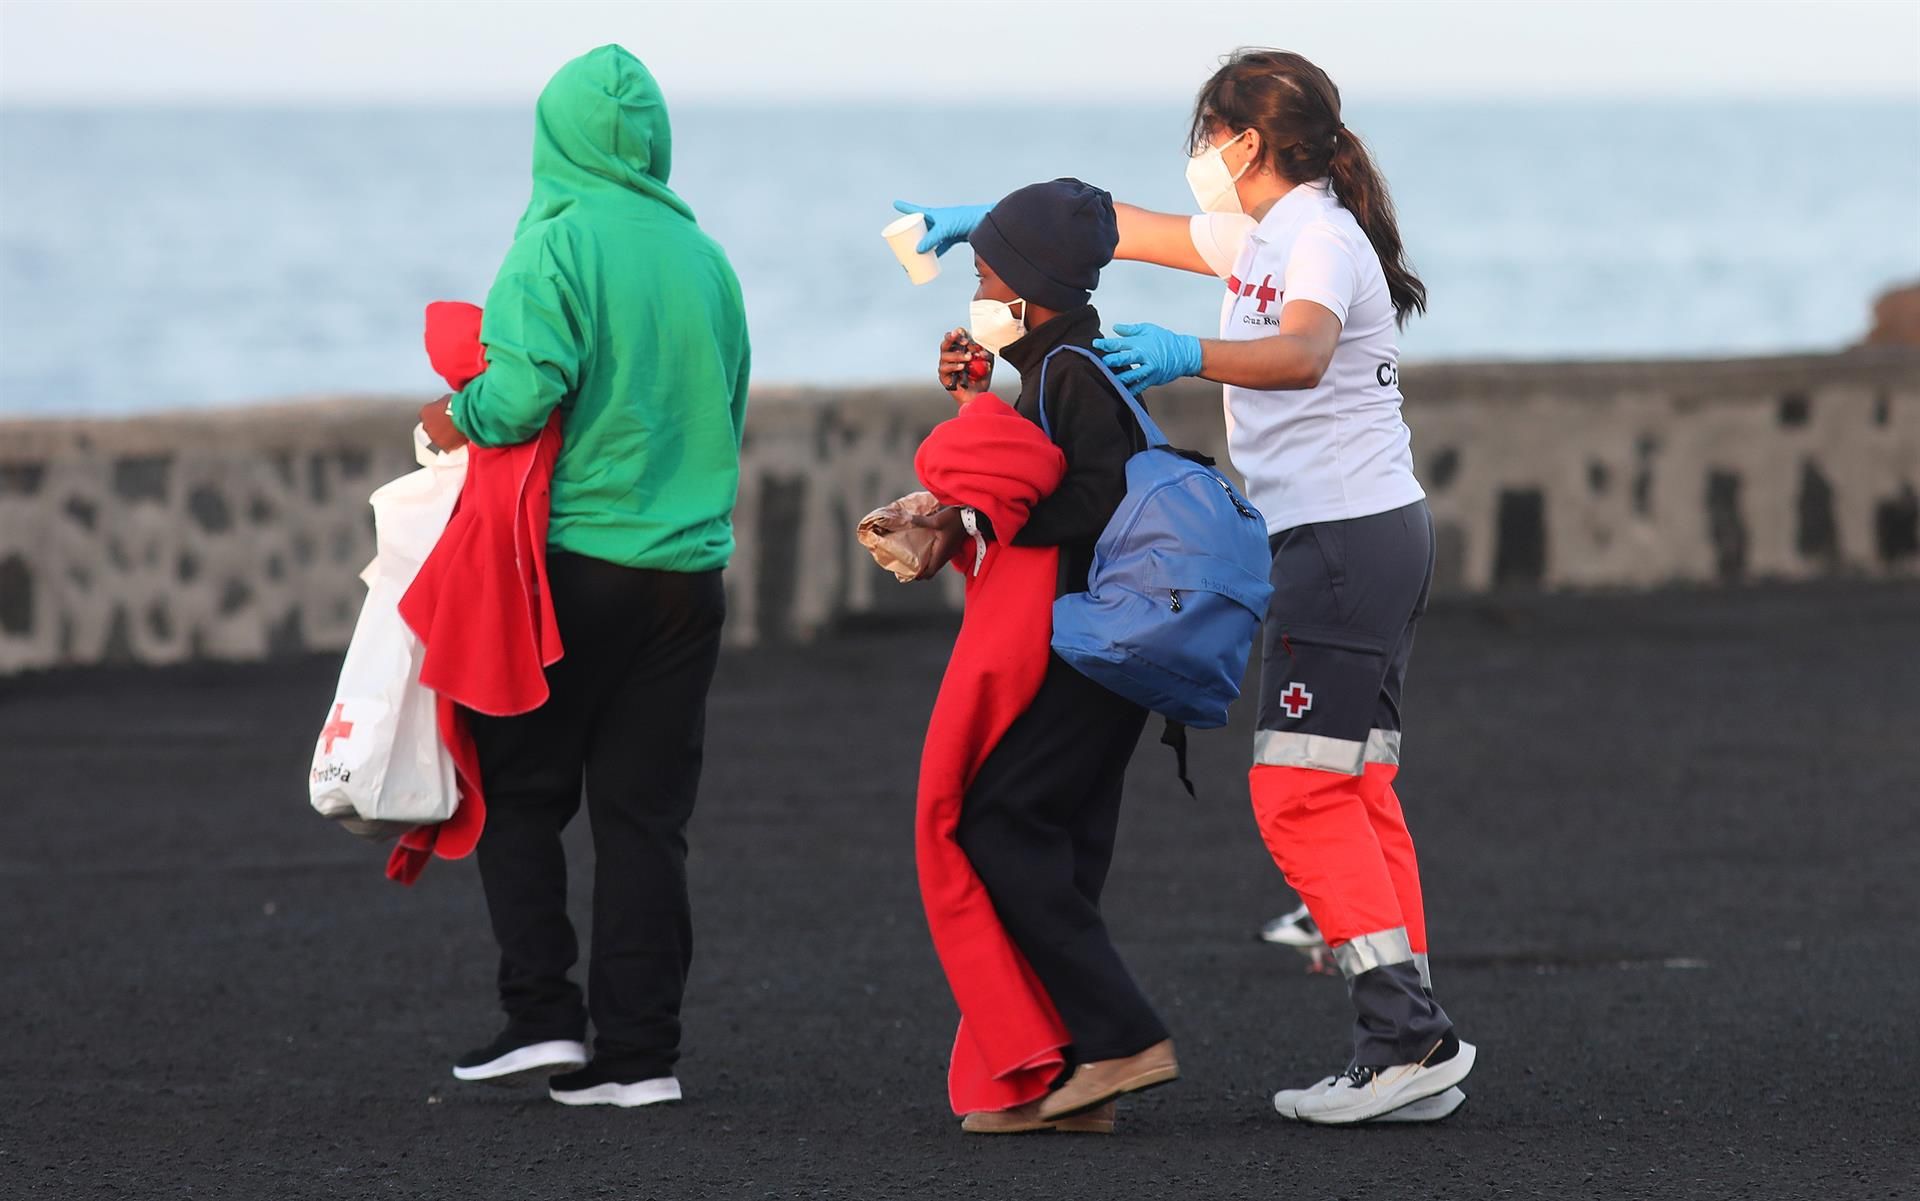 Foto de archivo de la llegada a Lanzarote de 105 inmigrantes de origen subsahariano y magrebí, entre ellos una niña, rescatados por Salvamento Marítimo en la noche del 5 de septiembre. EFE/Adriel Perdomo